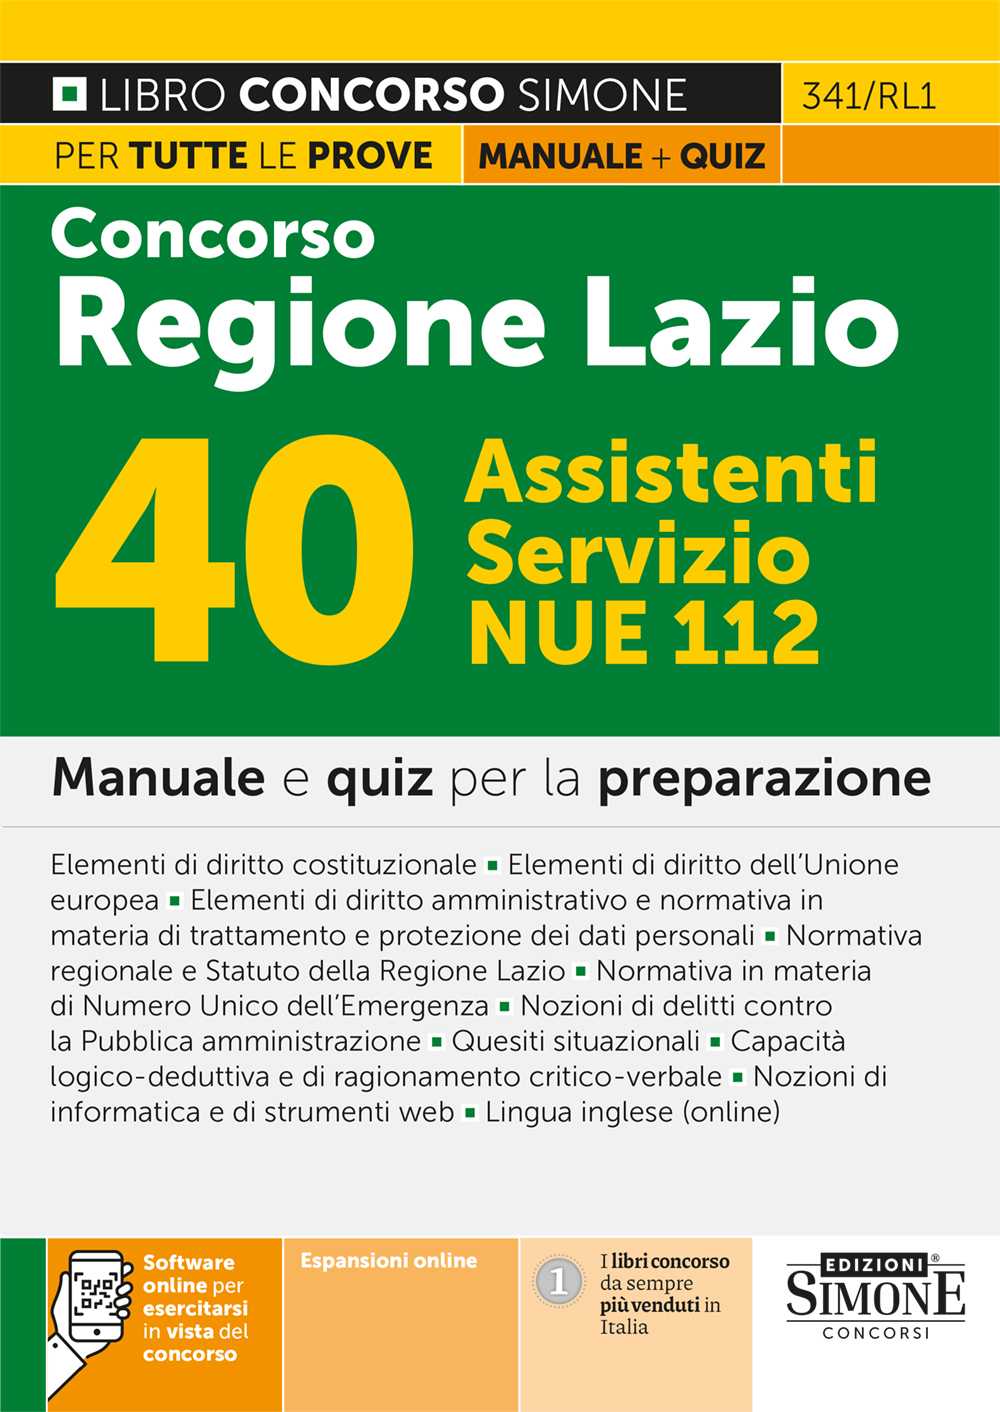 Concorso Regione Lazio 40 Assistenti Servizio NUE 112 - Manuale - 341/RL1